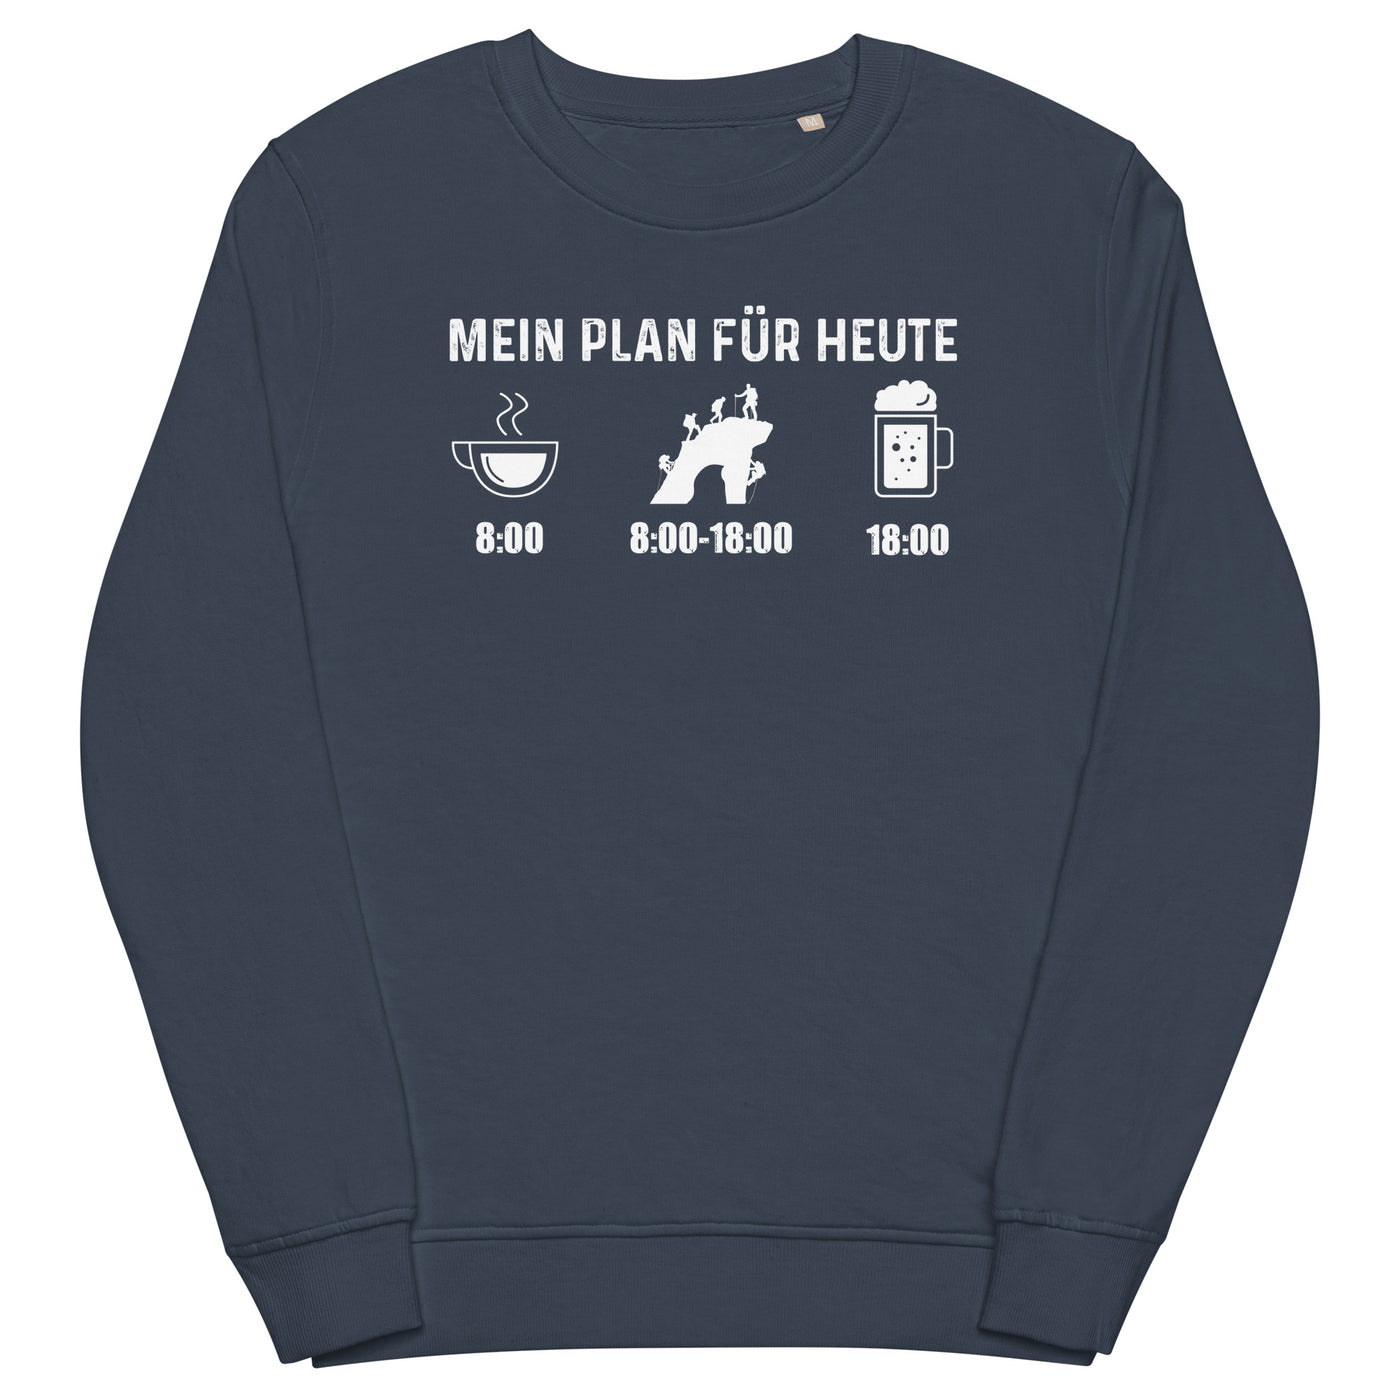 Mein Plan Für Heute - Unisex Premium Organic Sweatshirt klettern xxx yyy zzz French Navy